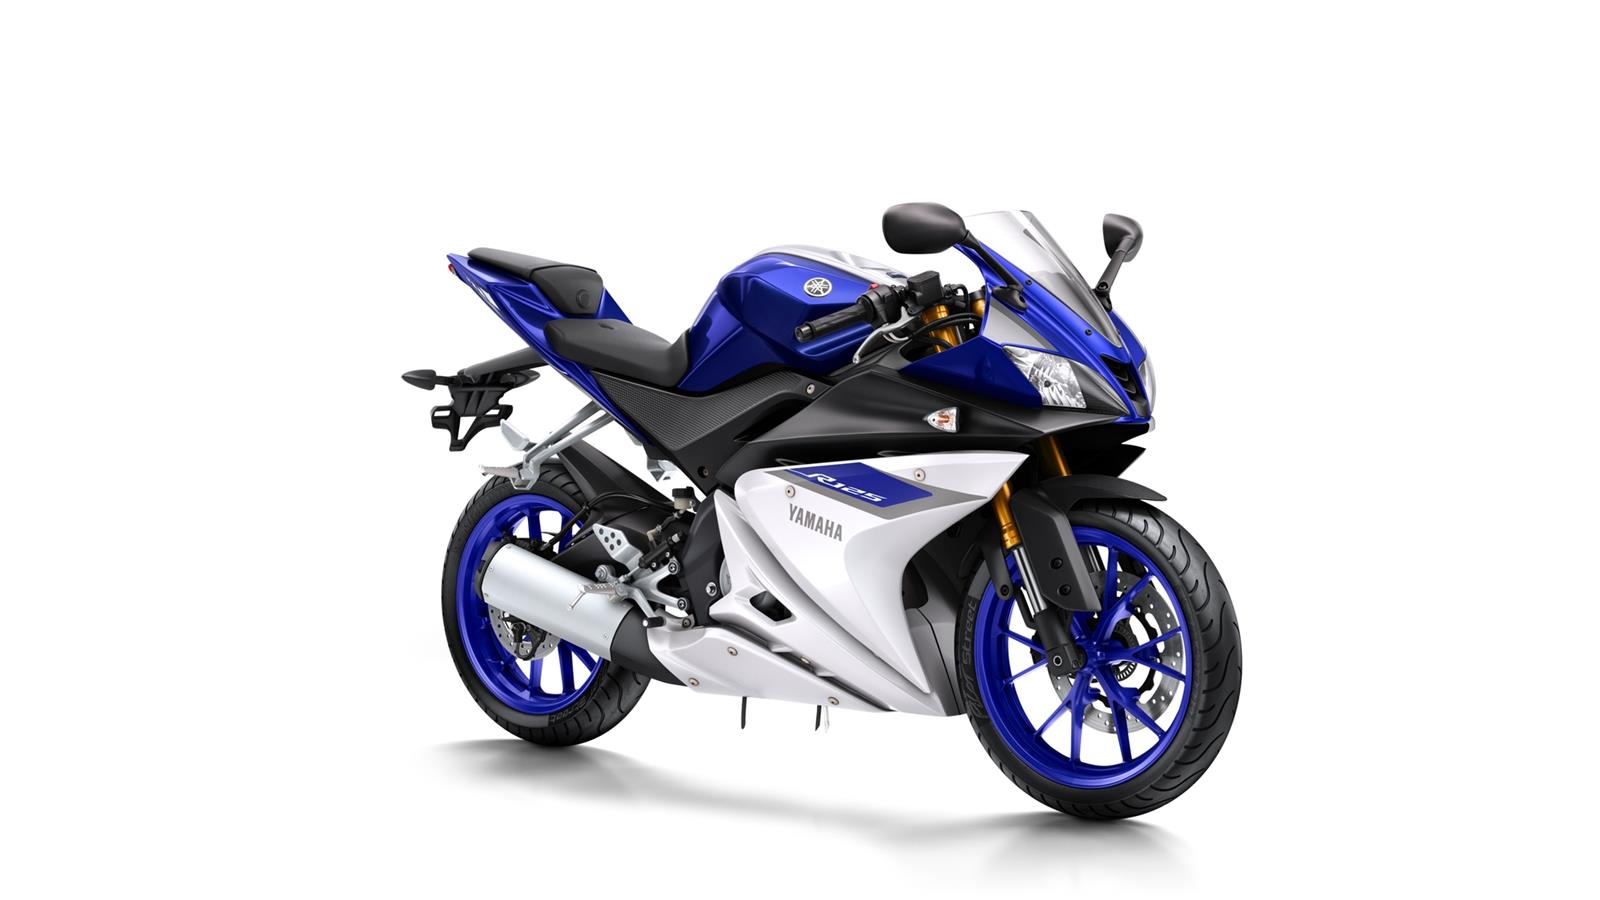 Závodní technologie s DNA řady R Ve společnosti Yamaha nebereme kategorii 125 ccm na lehkou váhu.